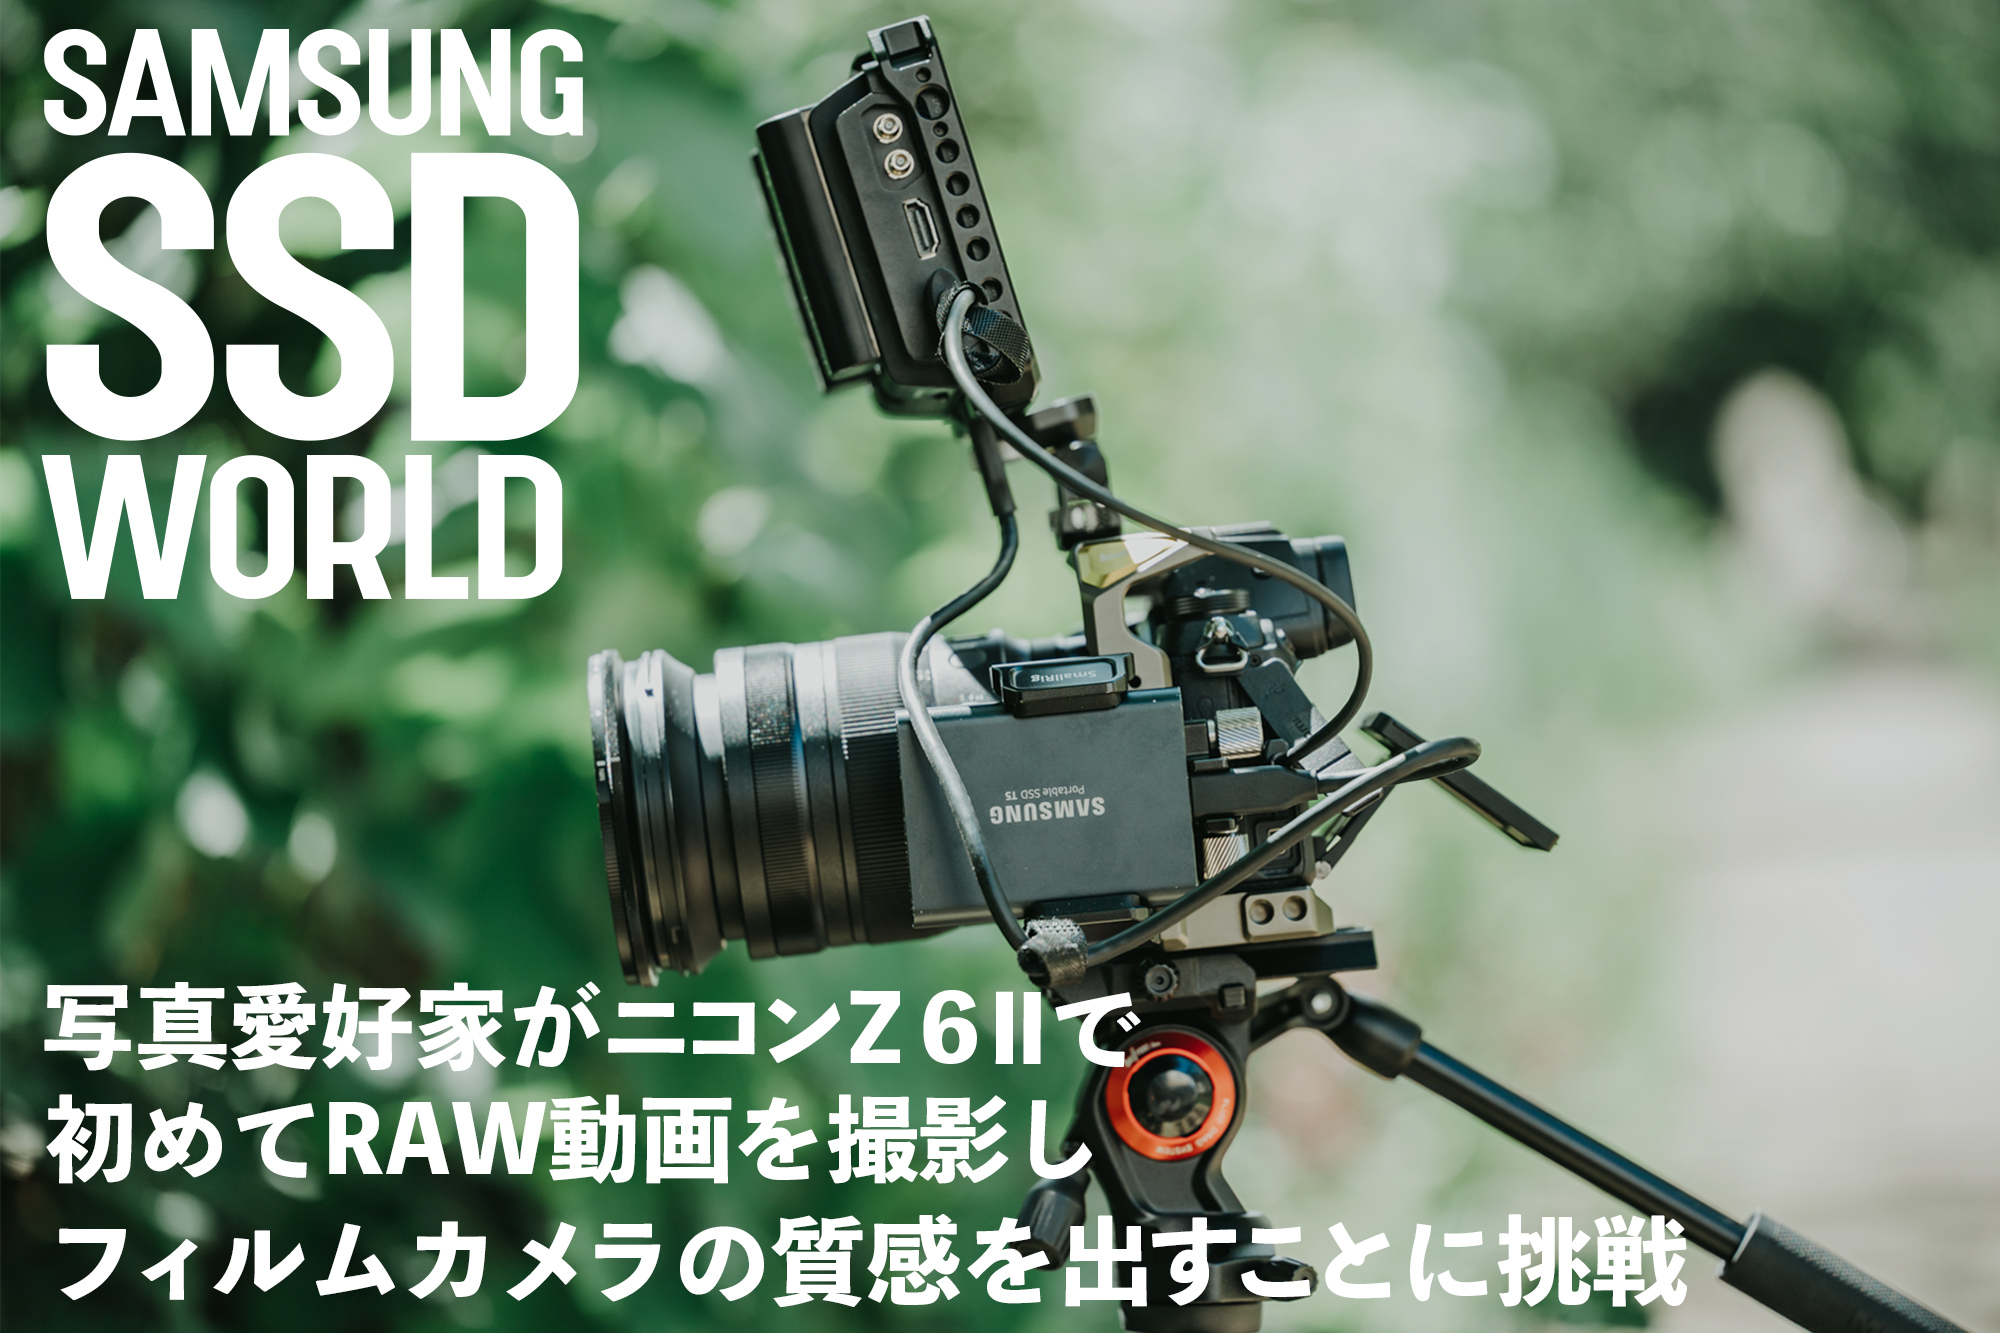 Samsung Ssd World 写真愛好家がニコン Z 6 で初めてraw動画を撮影し フィルムカメラの質感を出すことに挑戦 Video Salon